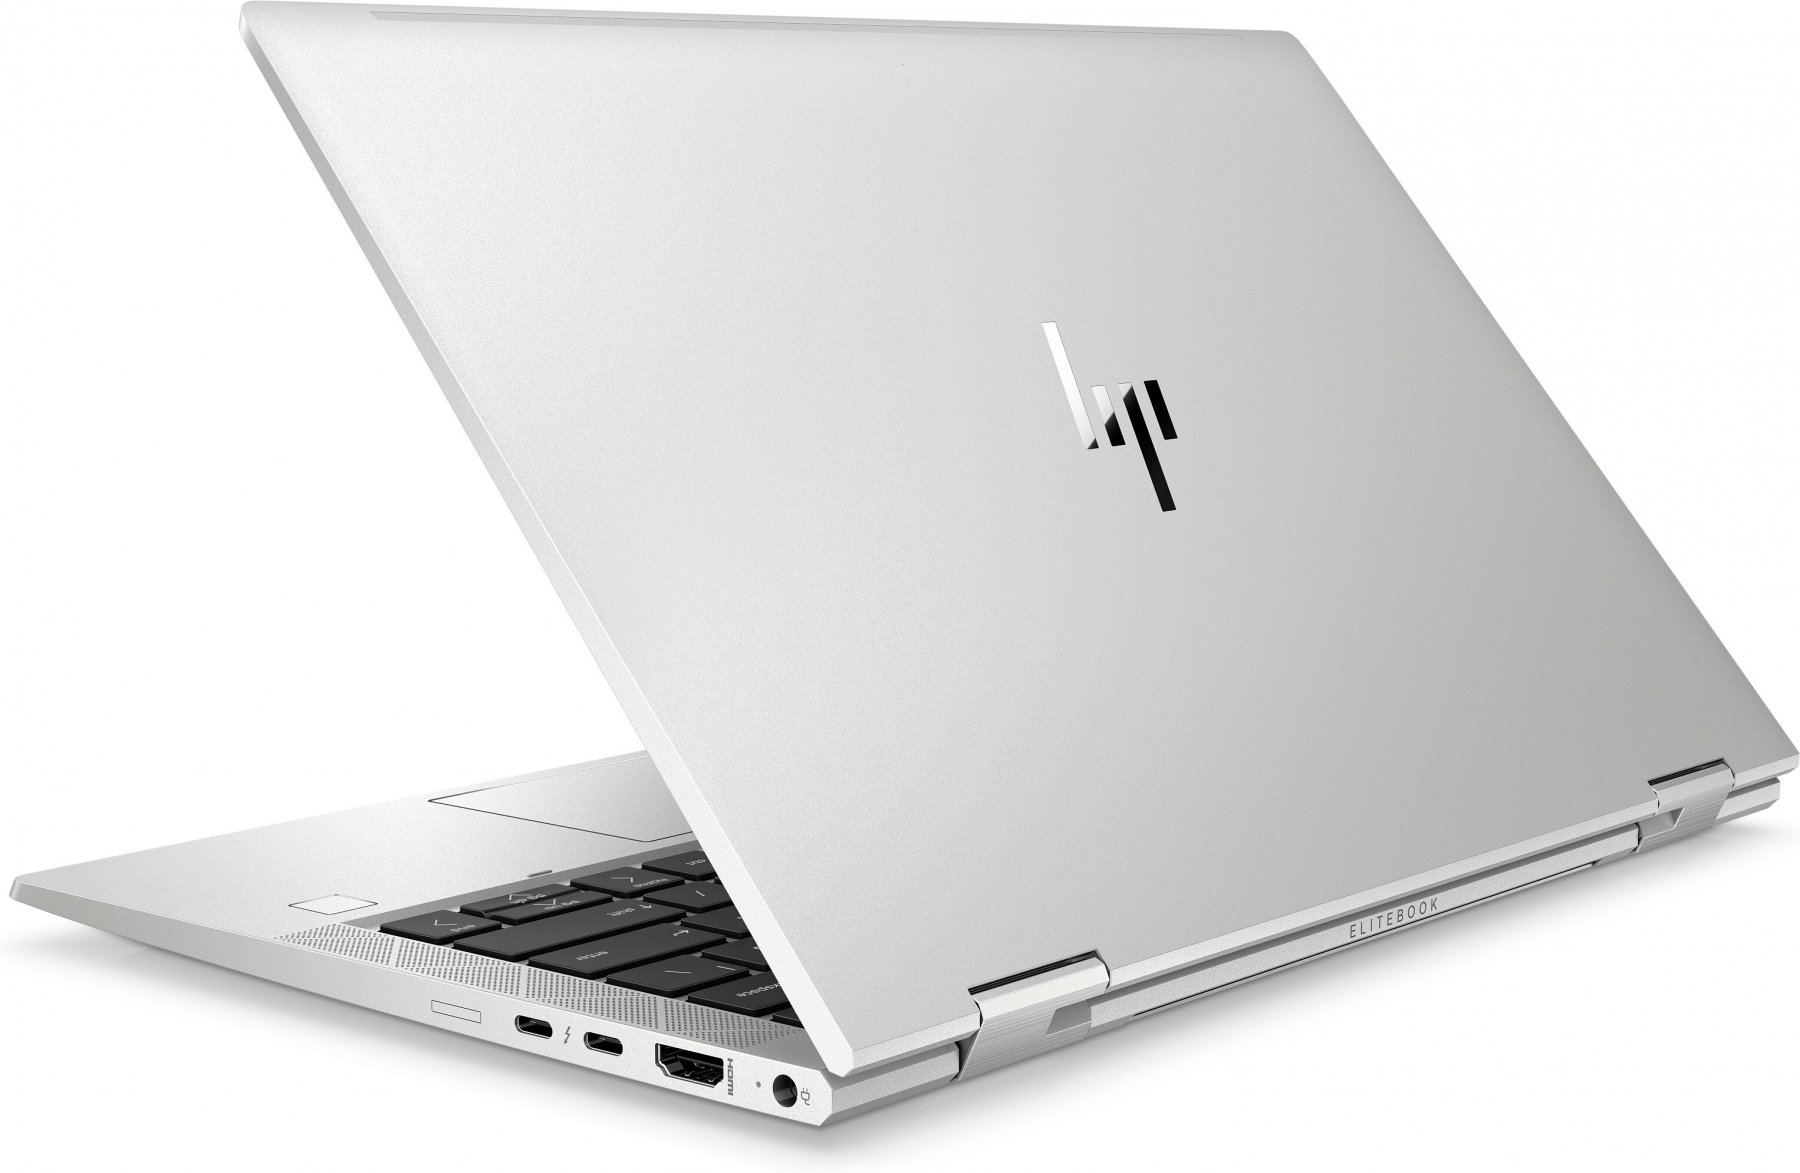 HP EliteBook x360 830 G7 i7-10710U 13 3"FHD TouchScreen 1000nit IPS 16GB DDR4 SSD512 UHD620 2xTB ALU BLK 53Wh W10Pro 3Y OnSite